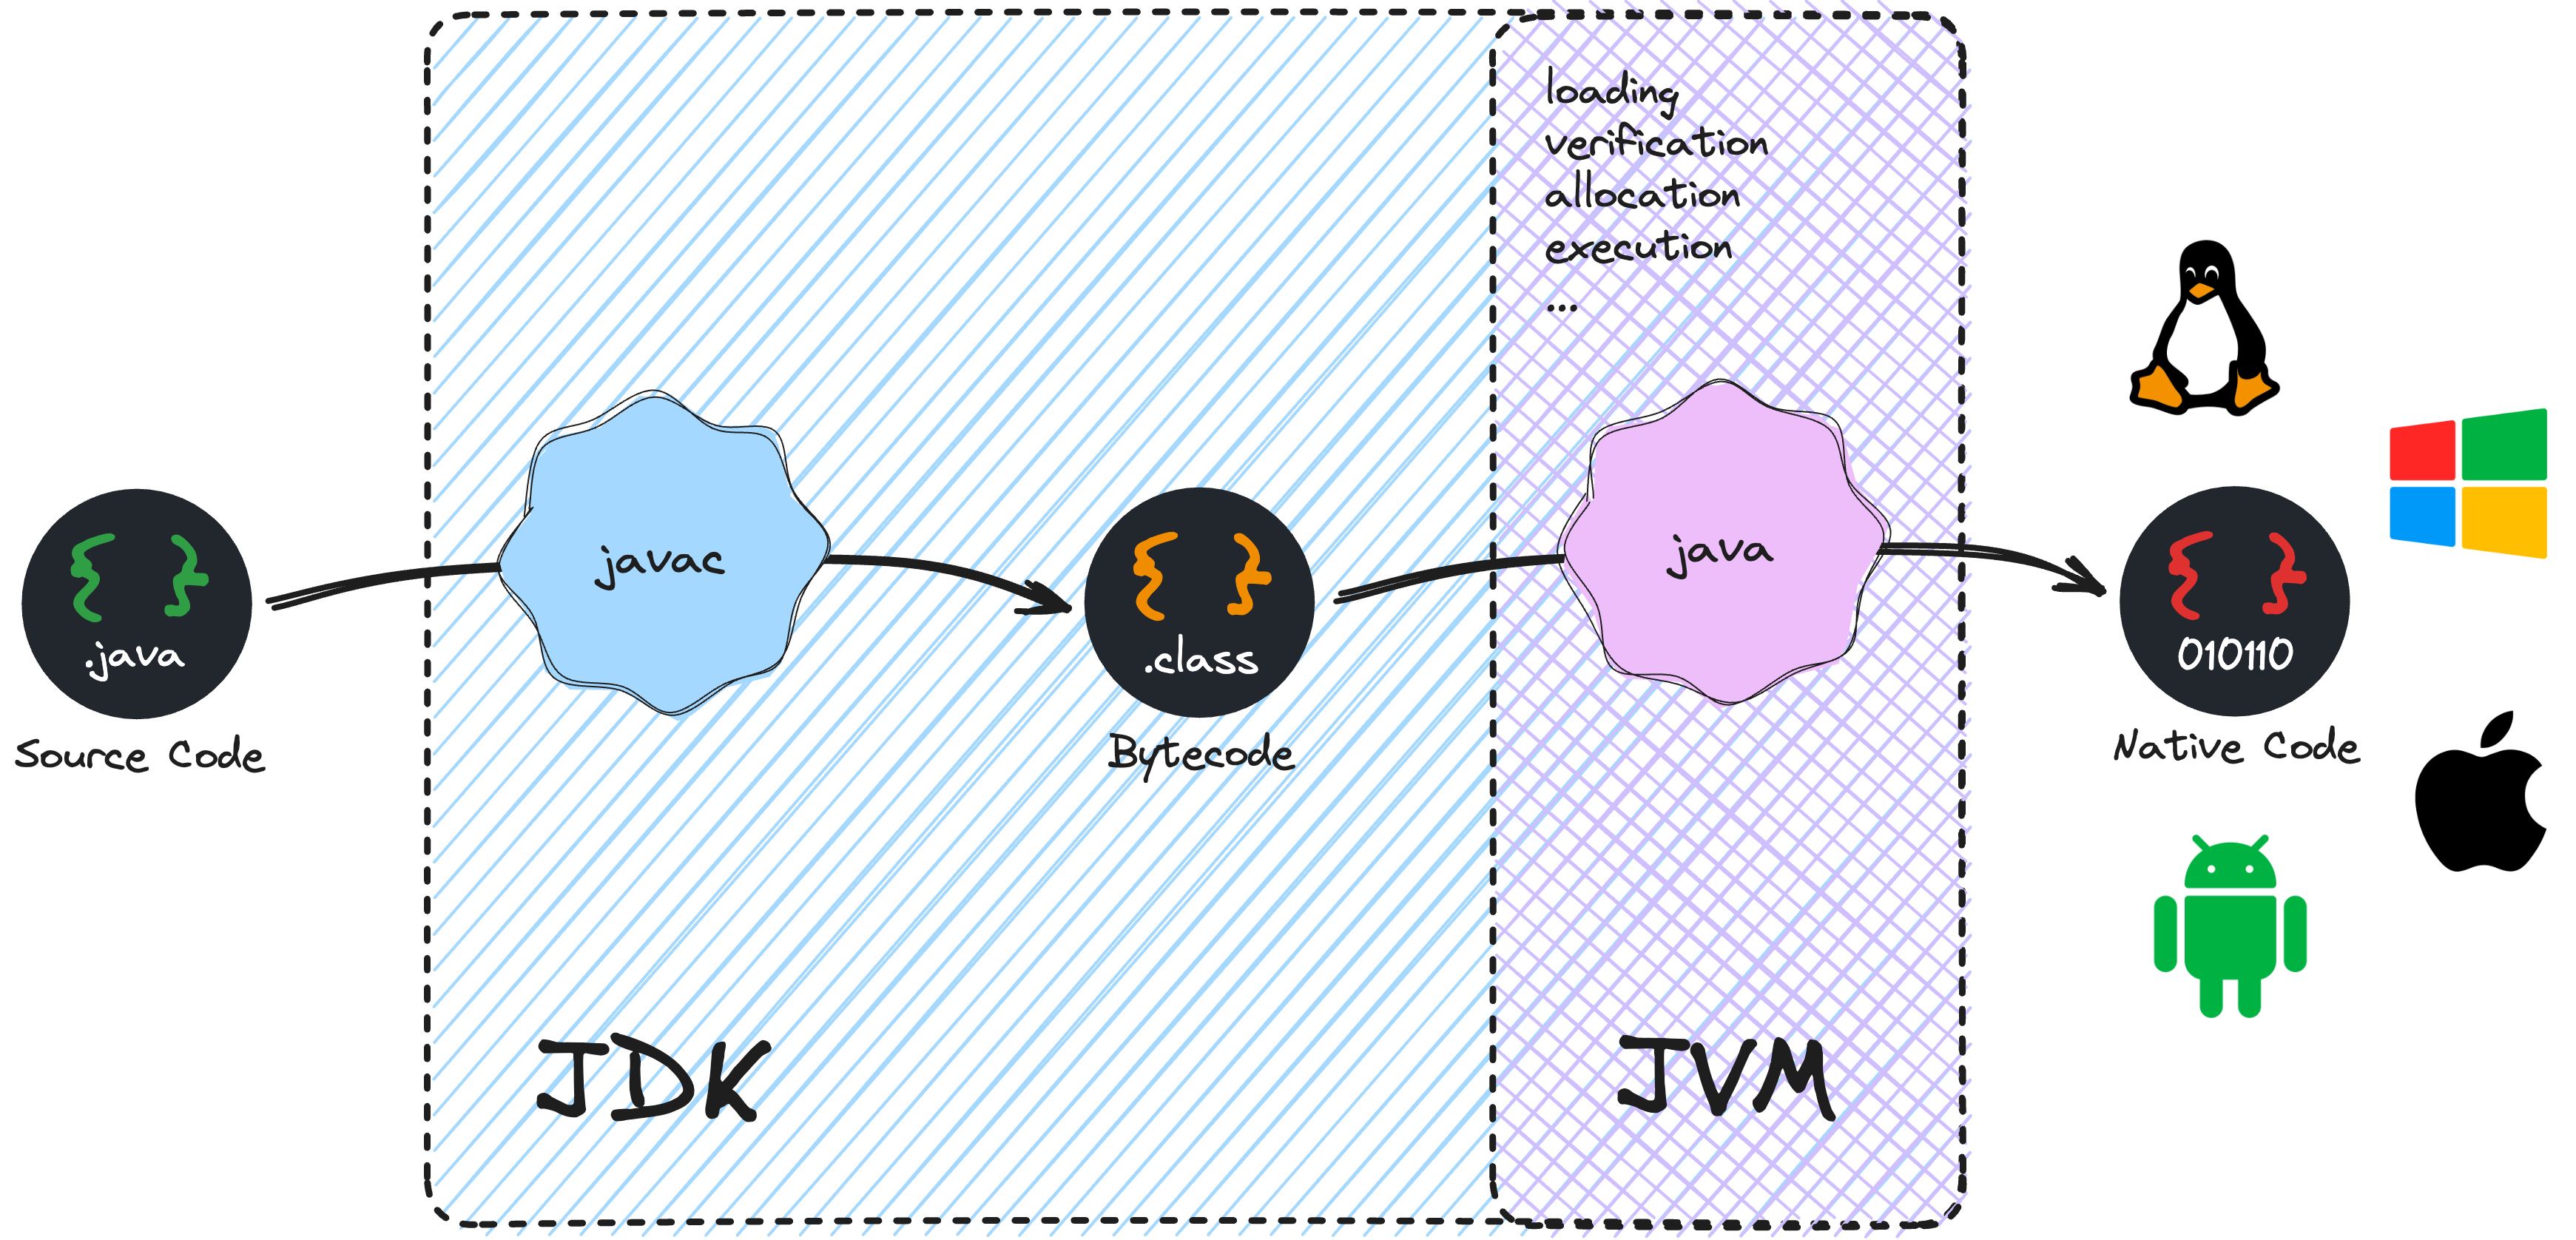 Упрощенный путь преобразования исходного кода Java в нативный код платформы